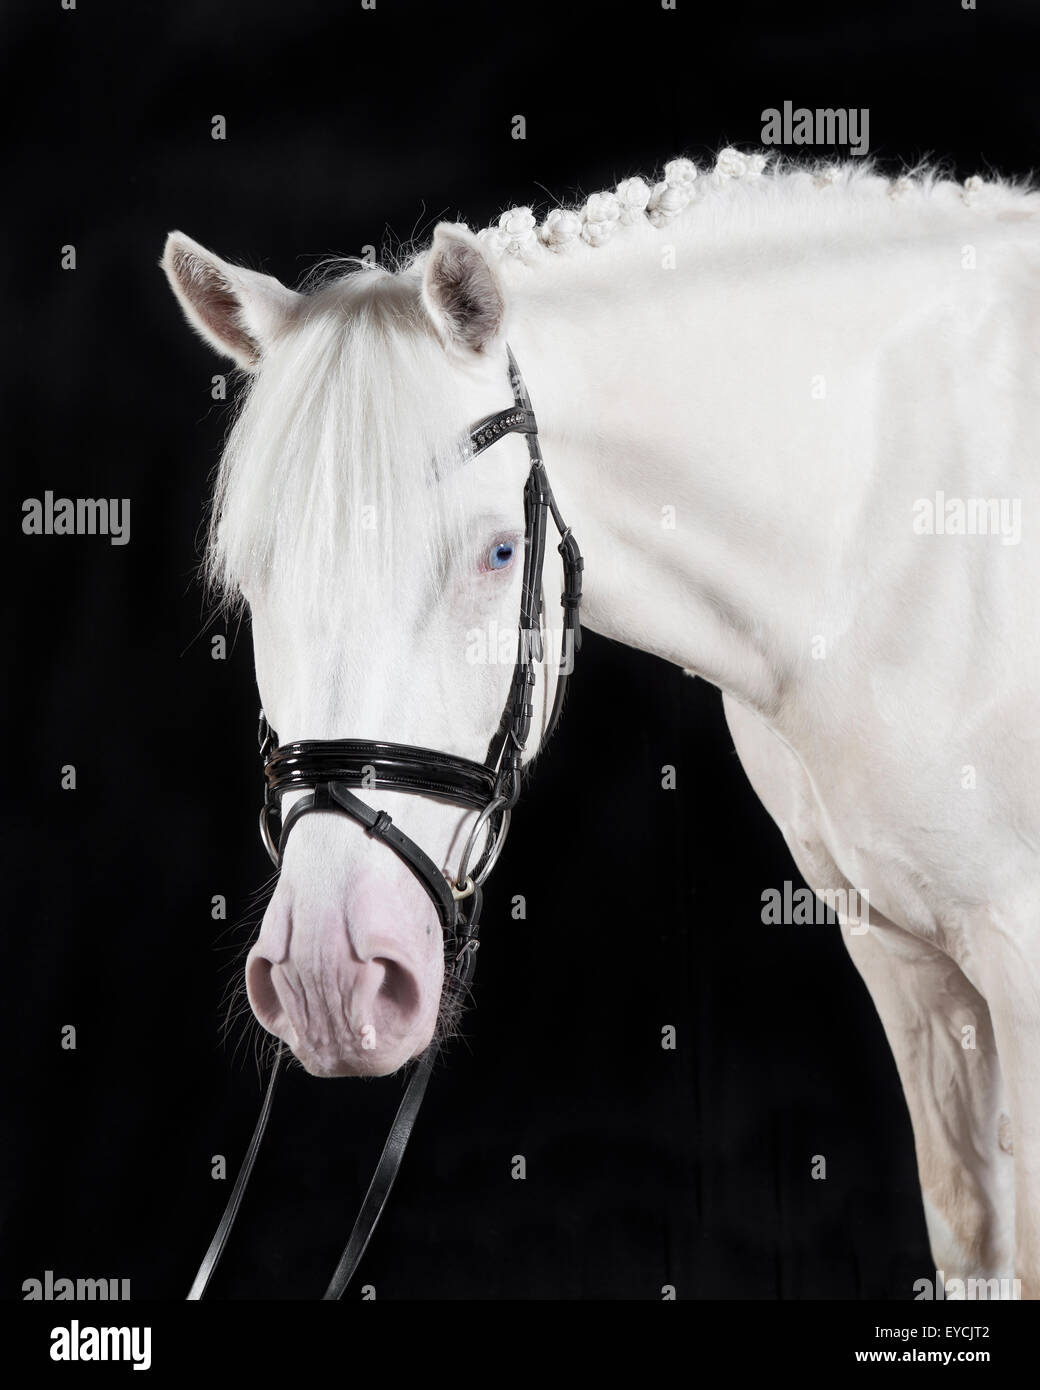 Bianchi tedeschi briglia pony contro uno sfondo nero, ritratto Foto Stock